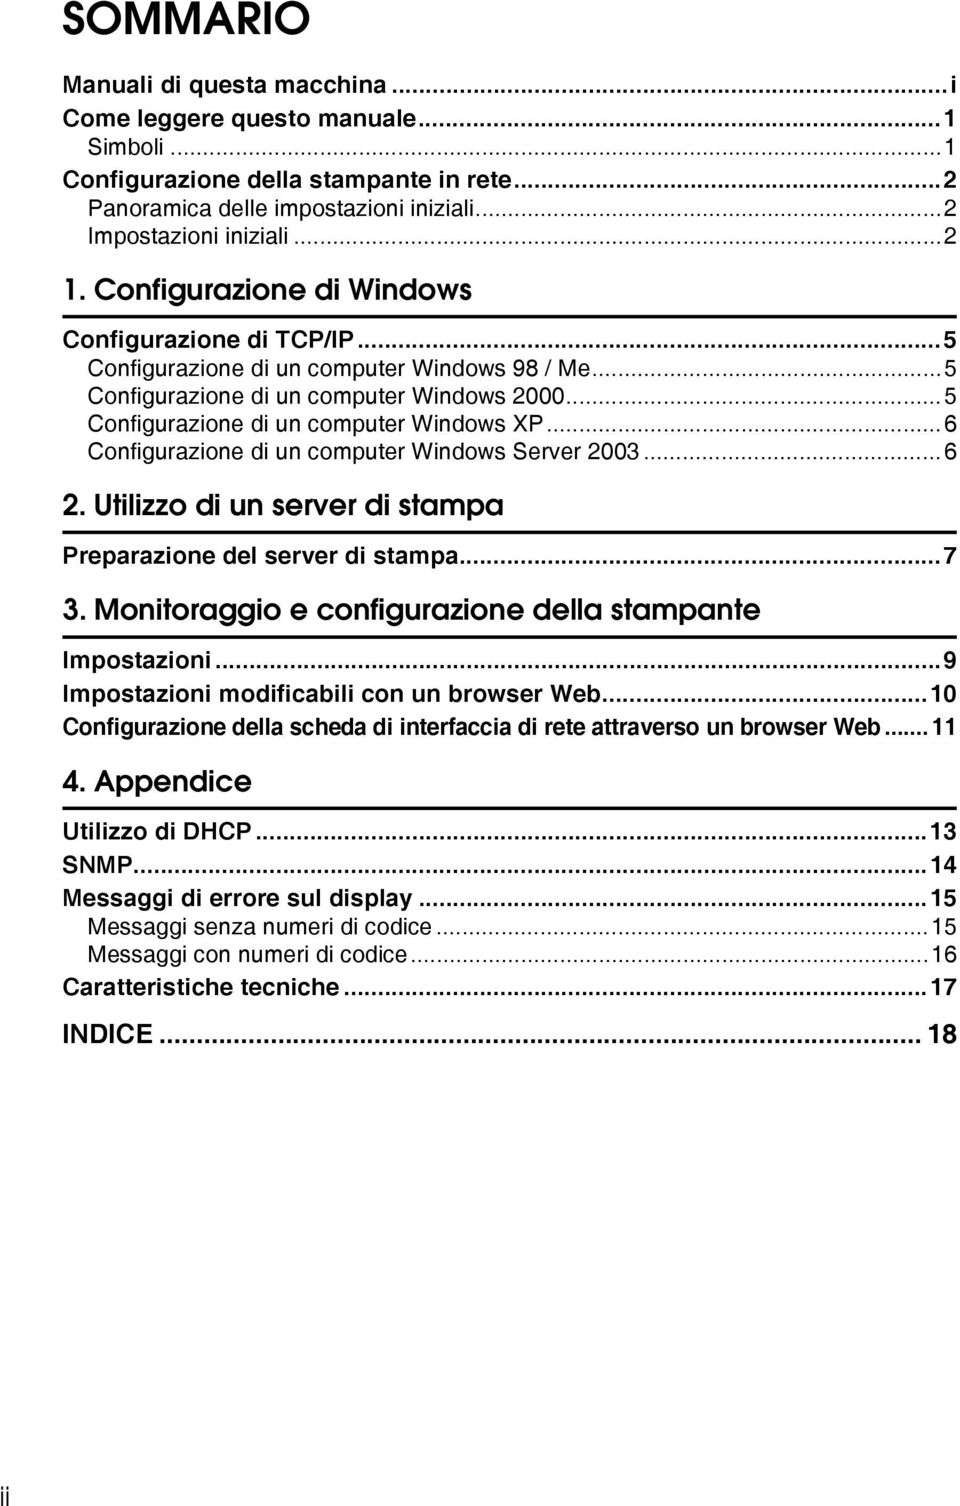 ..6 Configurazione di un computer Windows Server 2003...6 2. Utilizzo di un server di stampa Preparazione del server di stampa...7 3. Monitoraggio e configurazione della stampante Impostazioni.